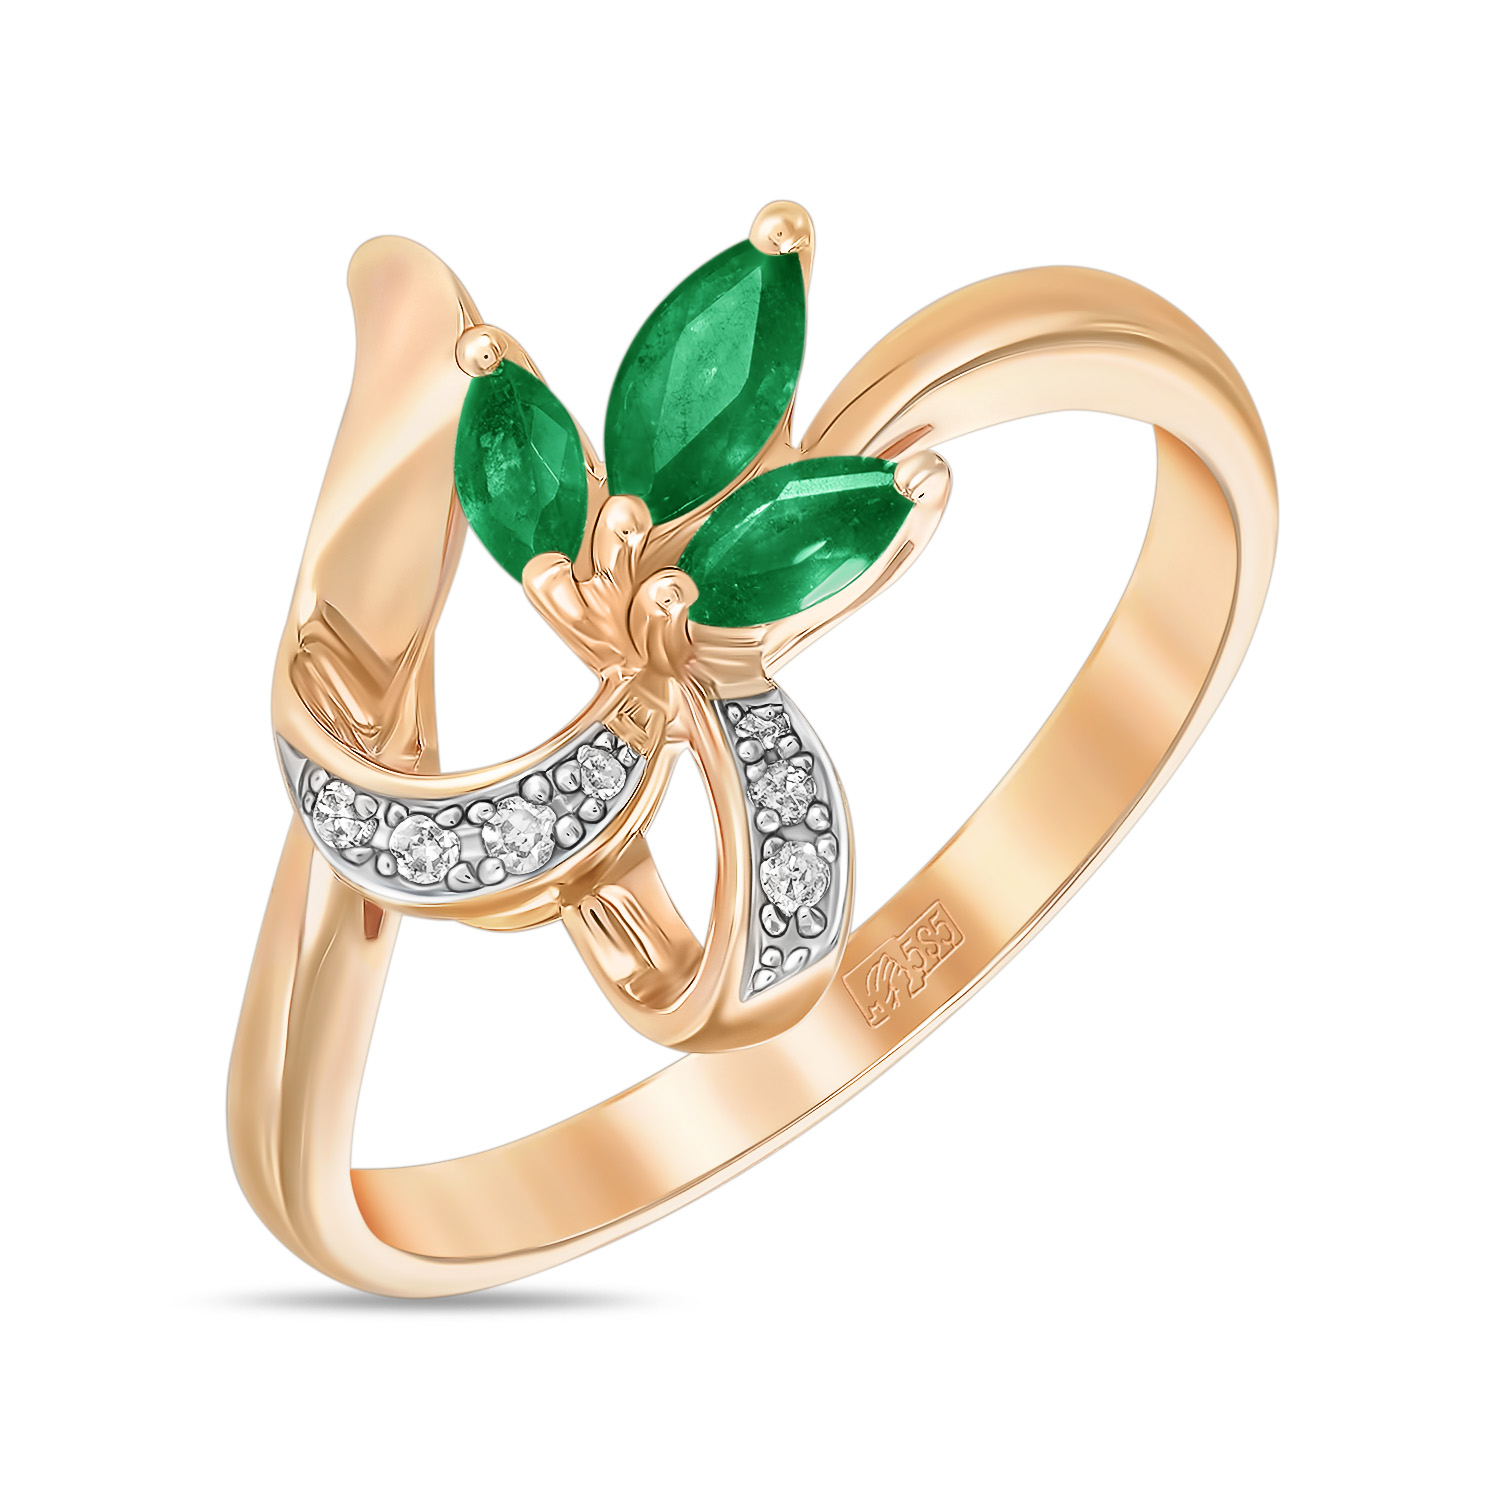 Кольца МЮЗ Золотое кольцо с бриллиантами и изумрудами кольца мюз кольцо с бриллиантами и изумрудами